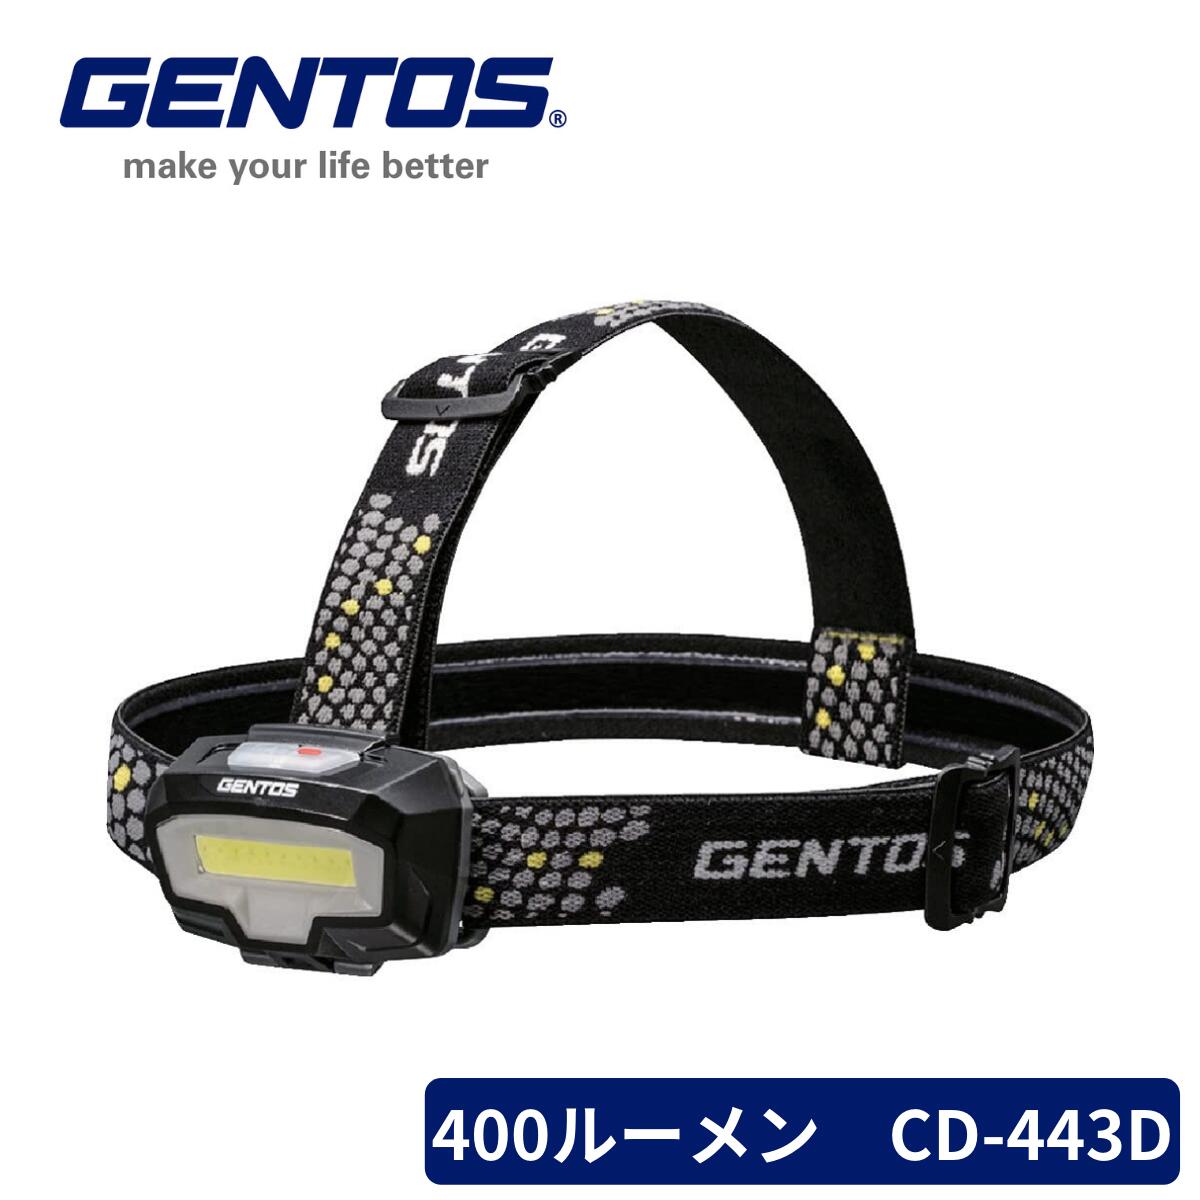 【楽天スーパーSALE】GENTOS LED ヘッドライト CB-443D コンブレーカー 単4電池式 400ルーメン 2色(白/赤) 父の日 早割